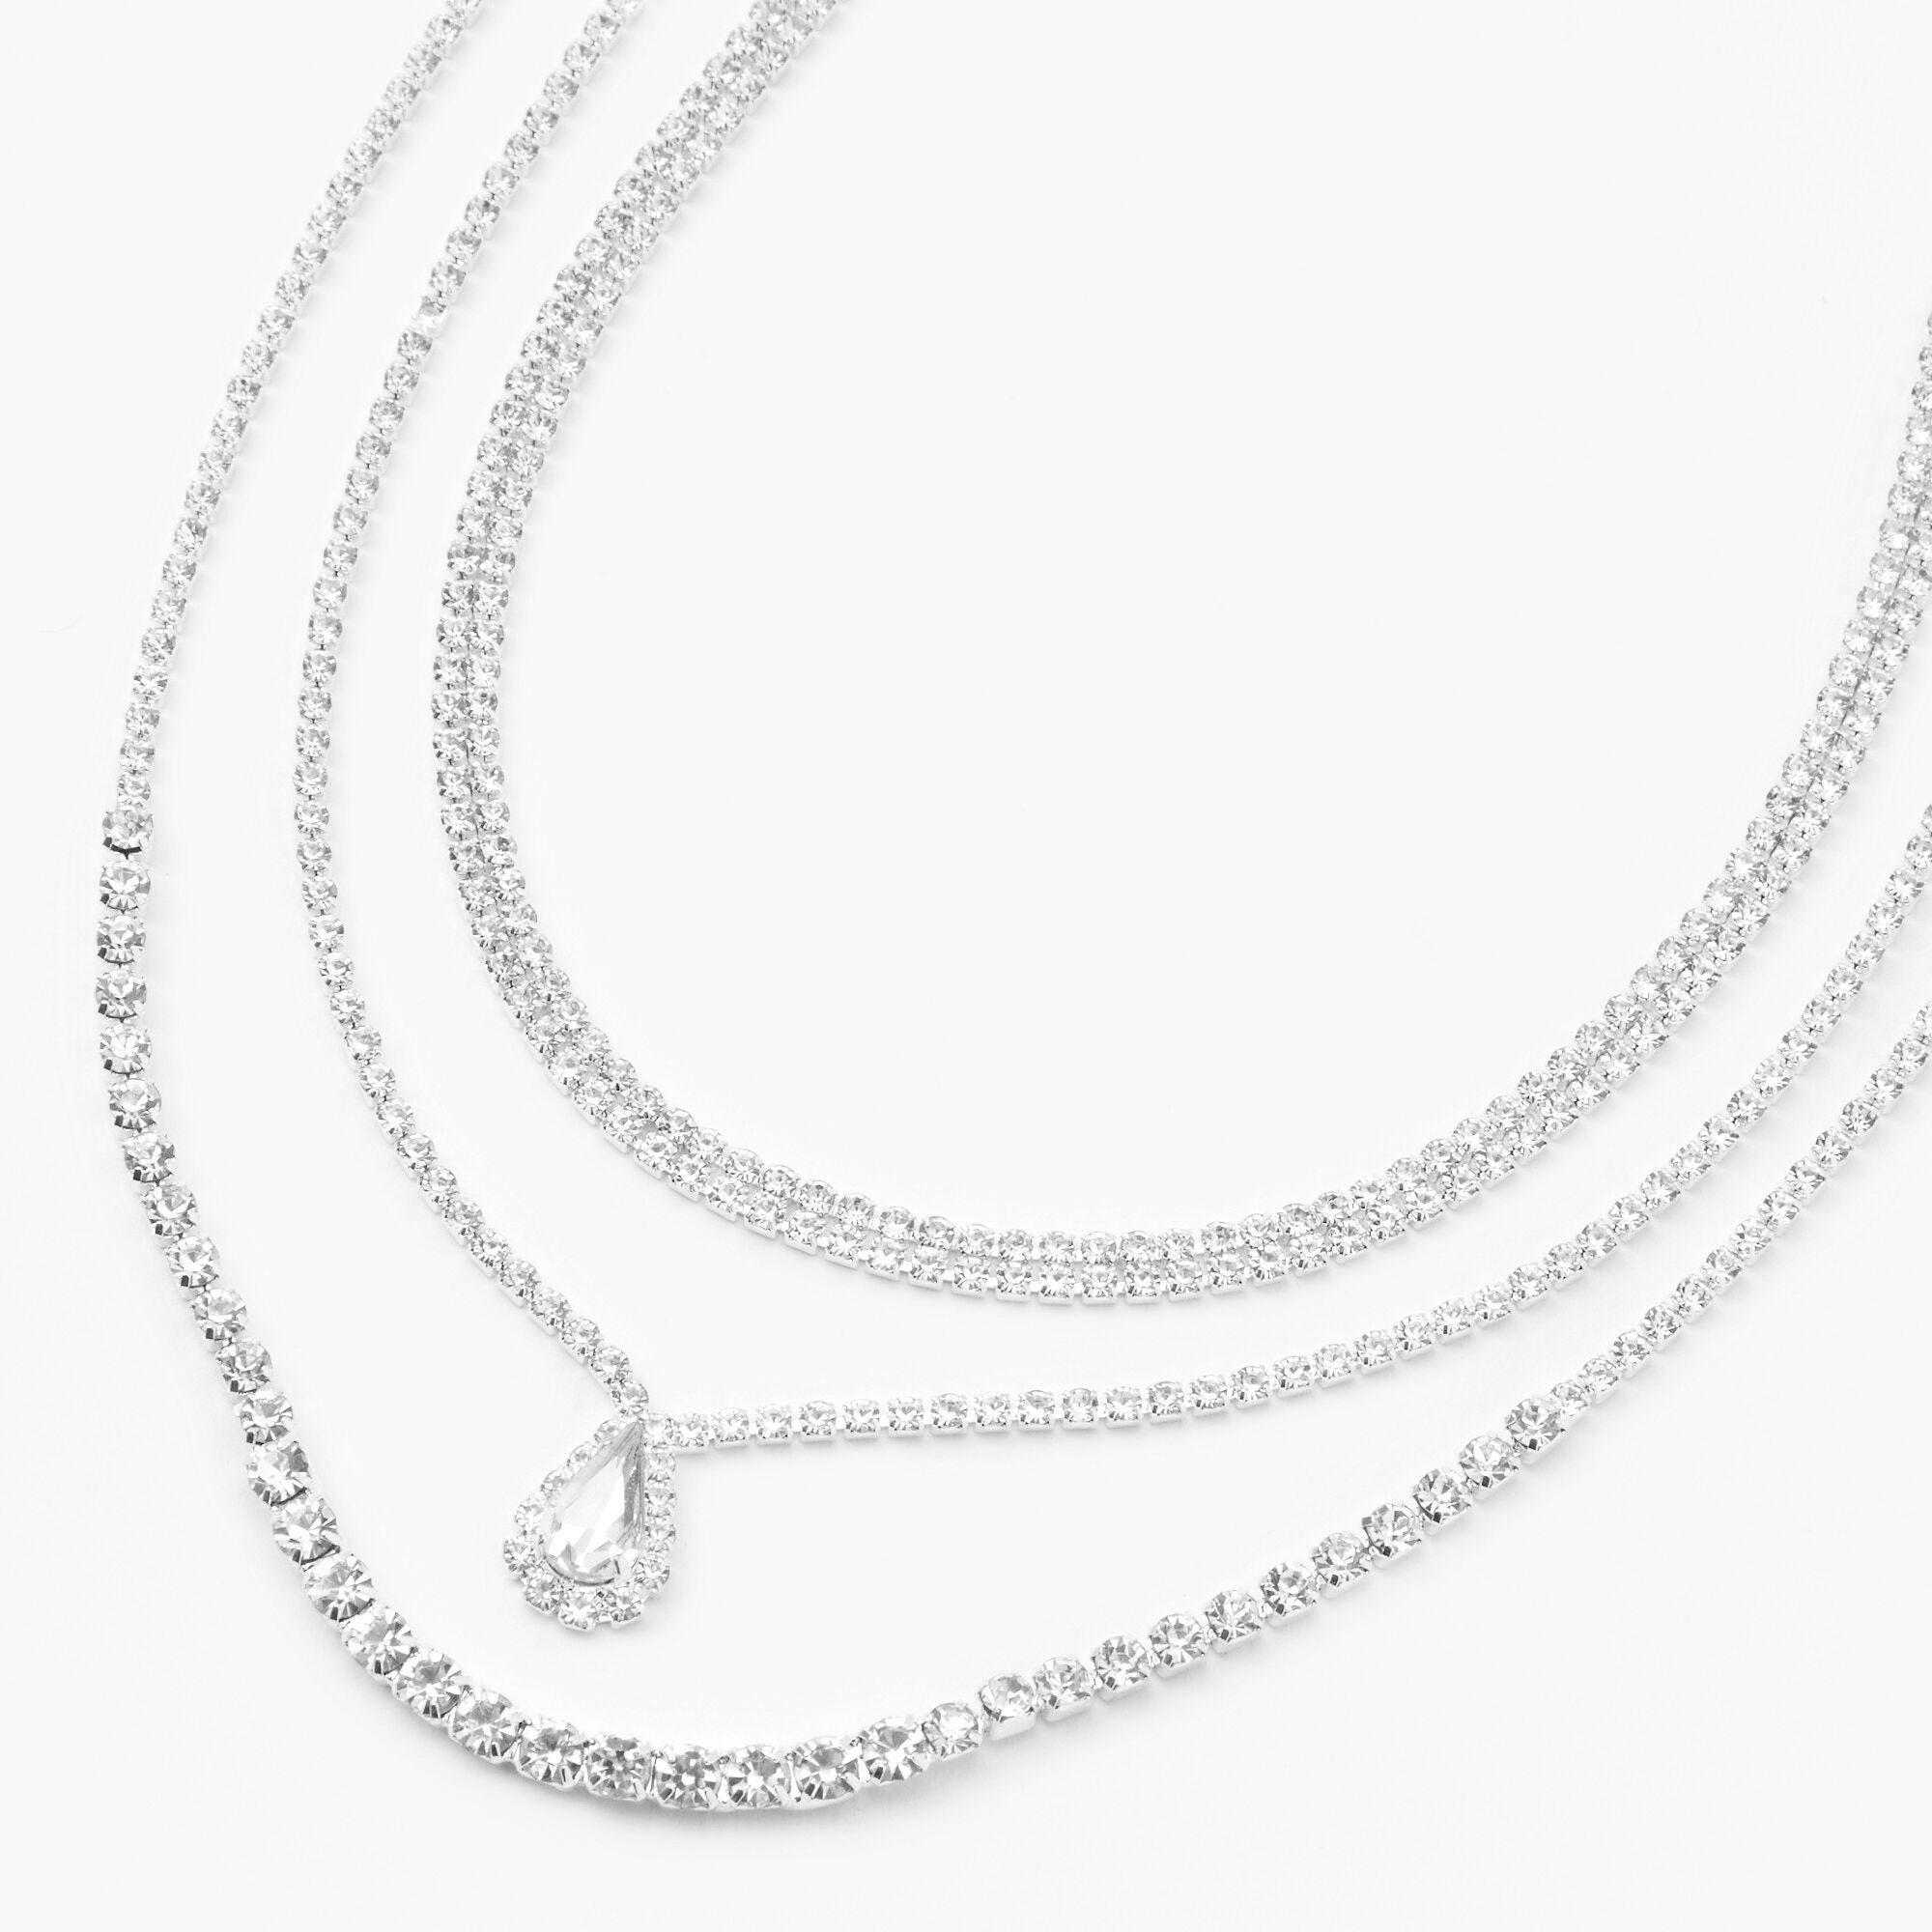 Silver Rhinestone Multi Strand Chain Necklace